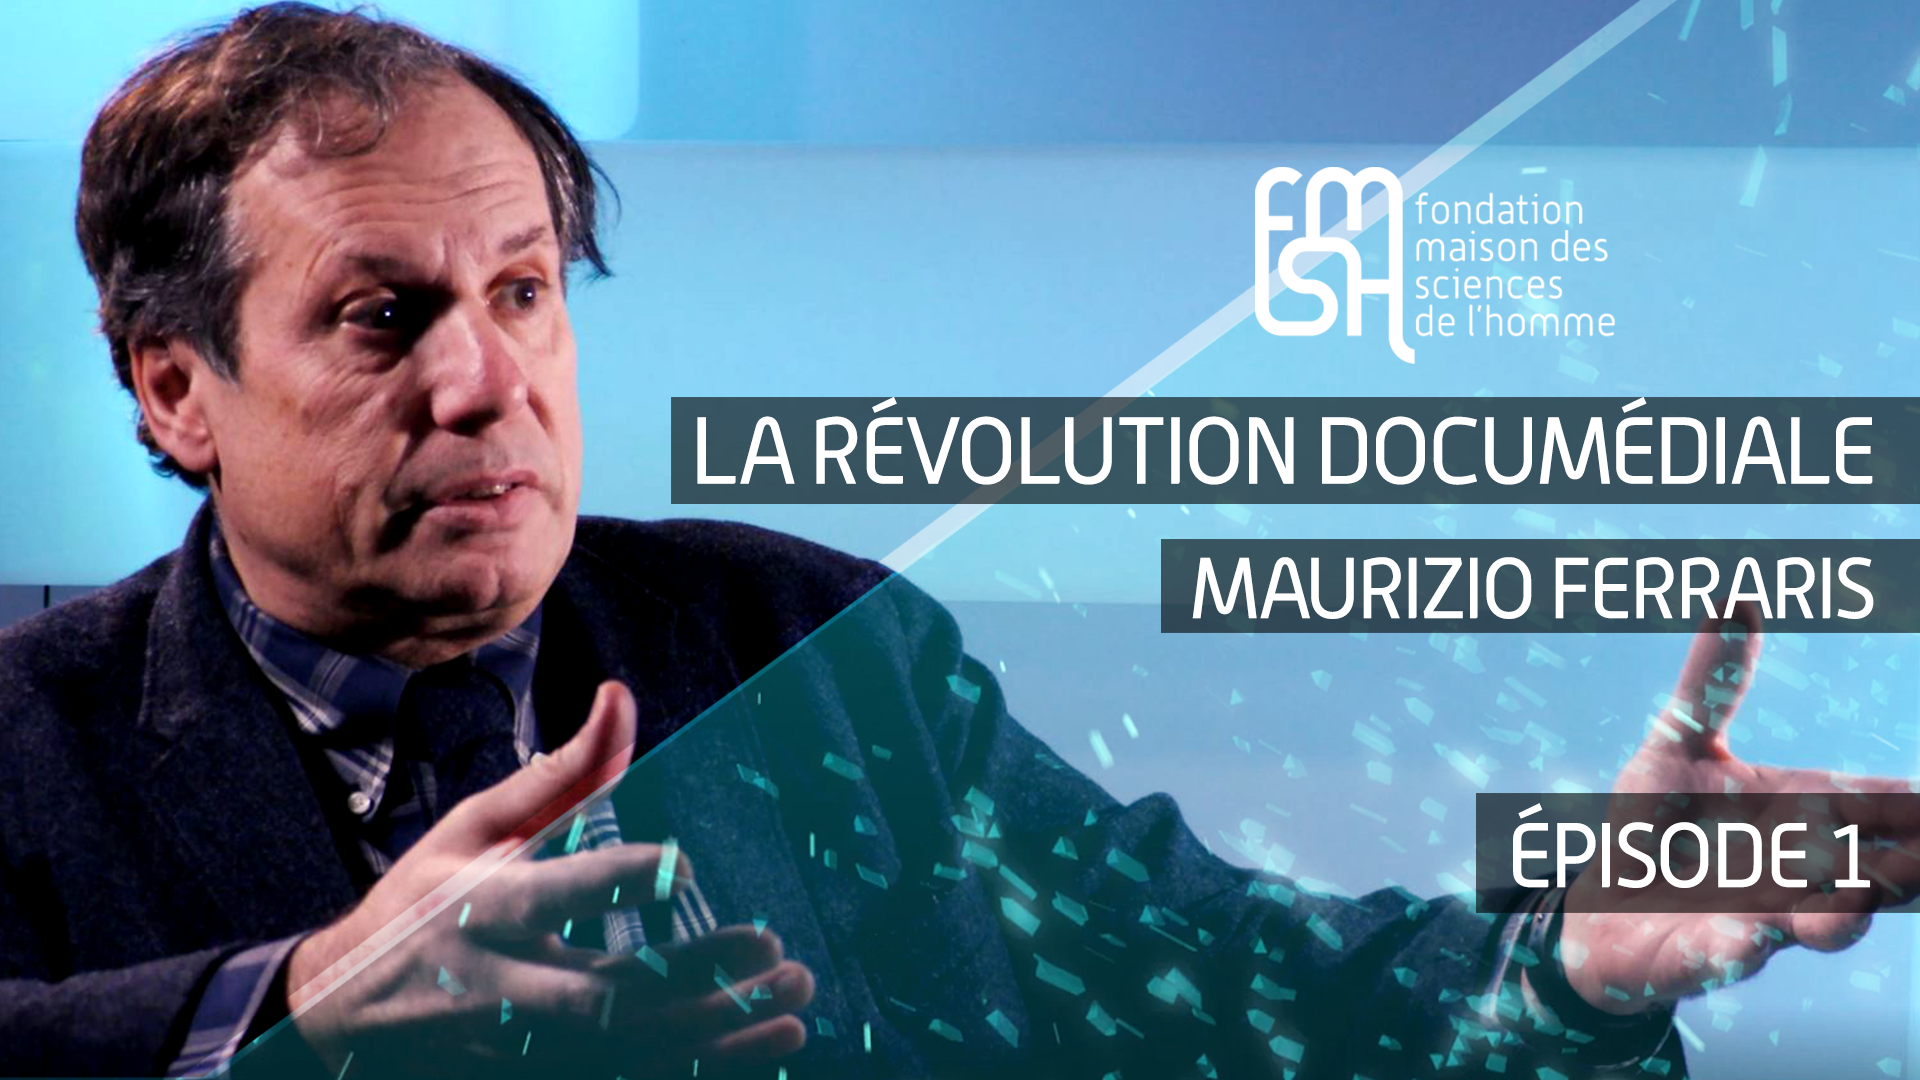 La révolution documédiale - Maurizio Ferraris